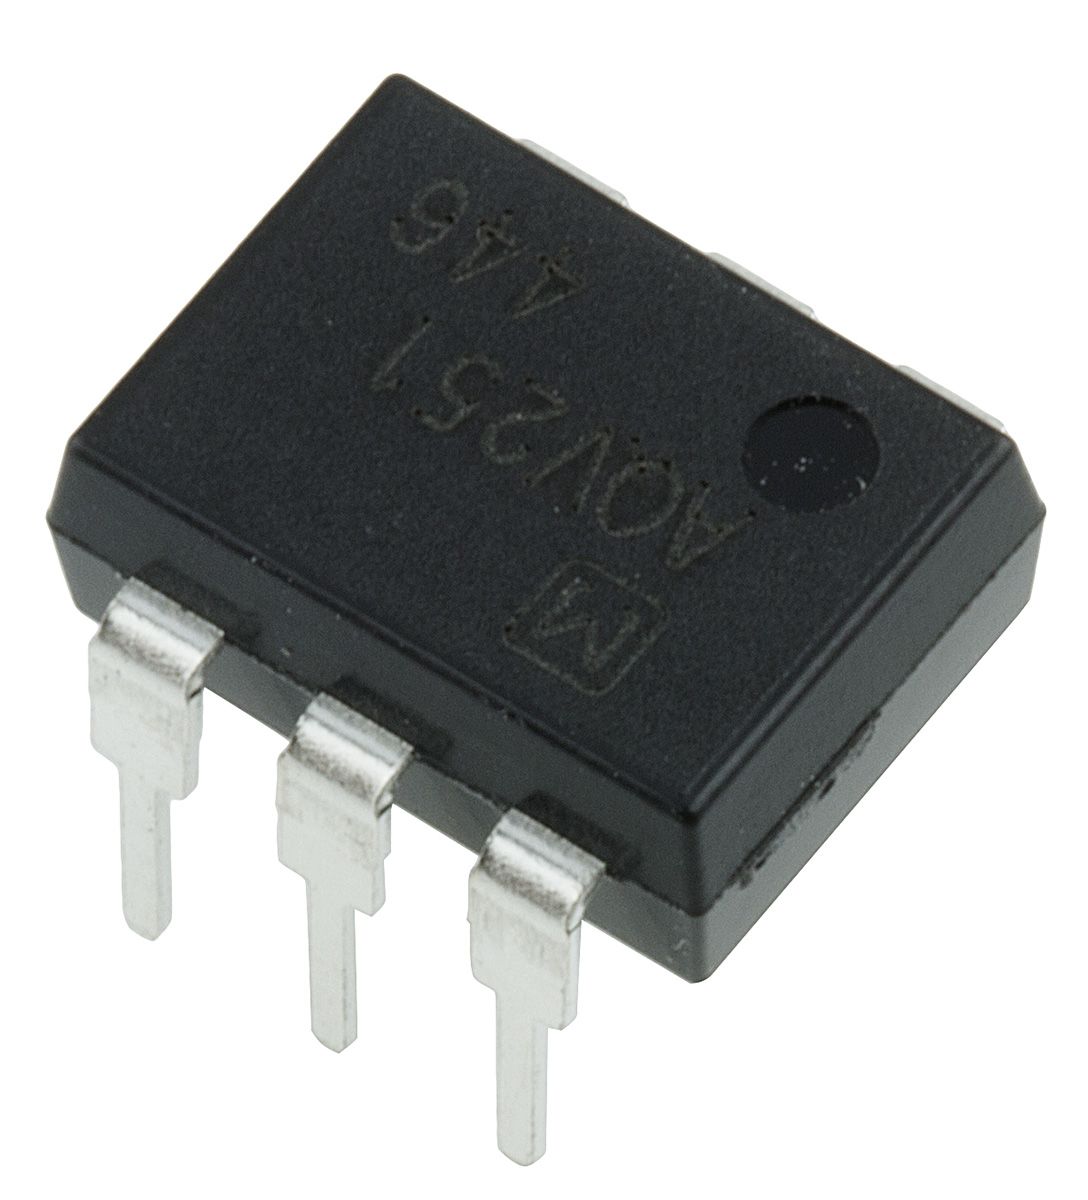 Panasonic, AQV251 DC Input MOSFET Output Optocoupler, Through Hole, 6-Pin DIP